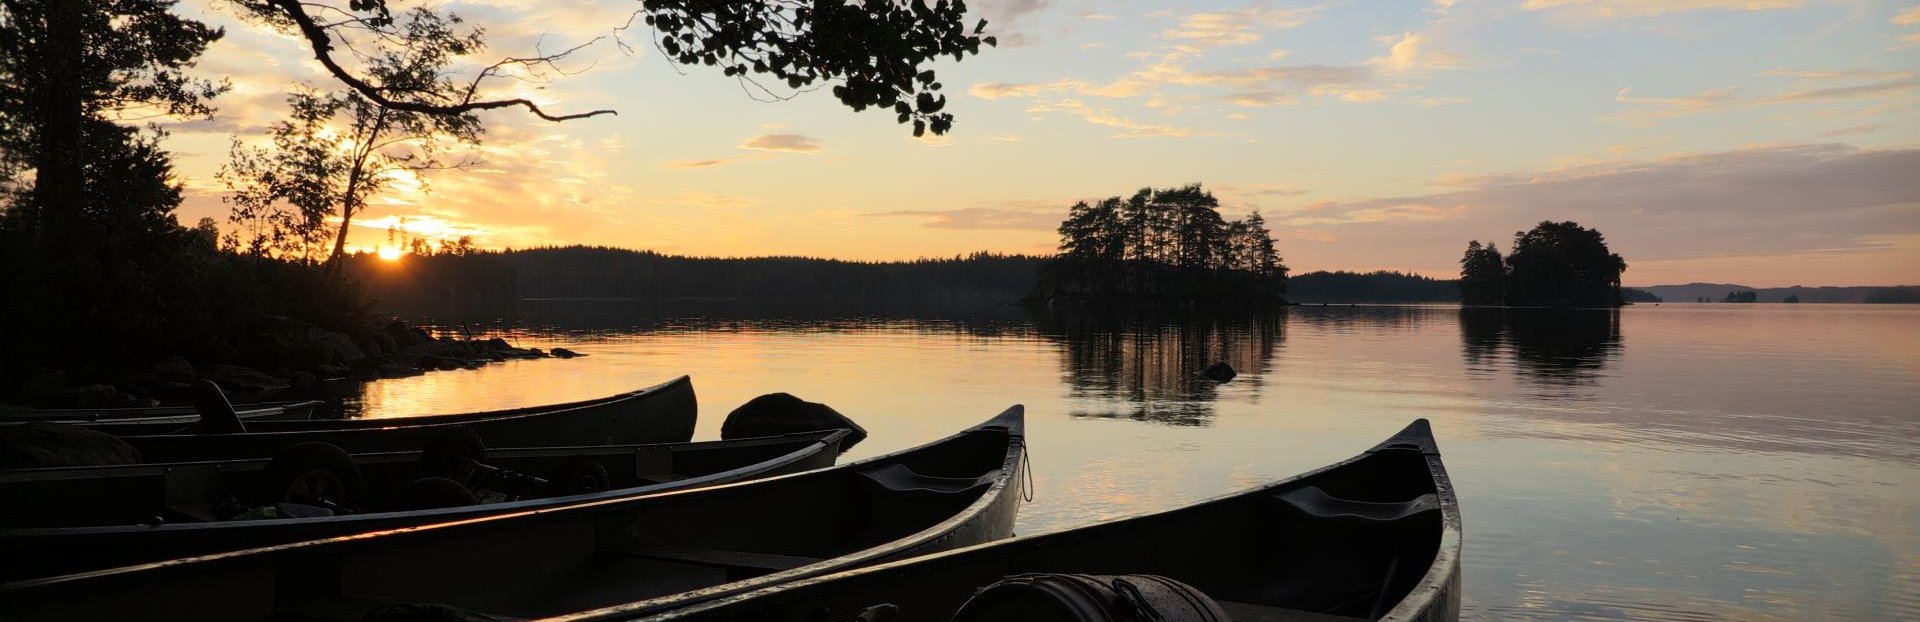 Schweden Familienurlaub - Anreisetipps für Familien zum Schweden Urlaub mit Kindern - Sonnenuntergang in Schweden